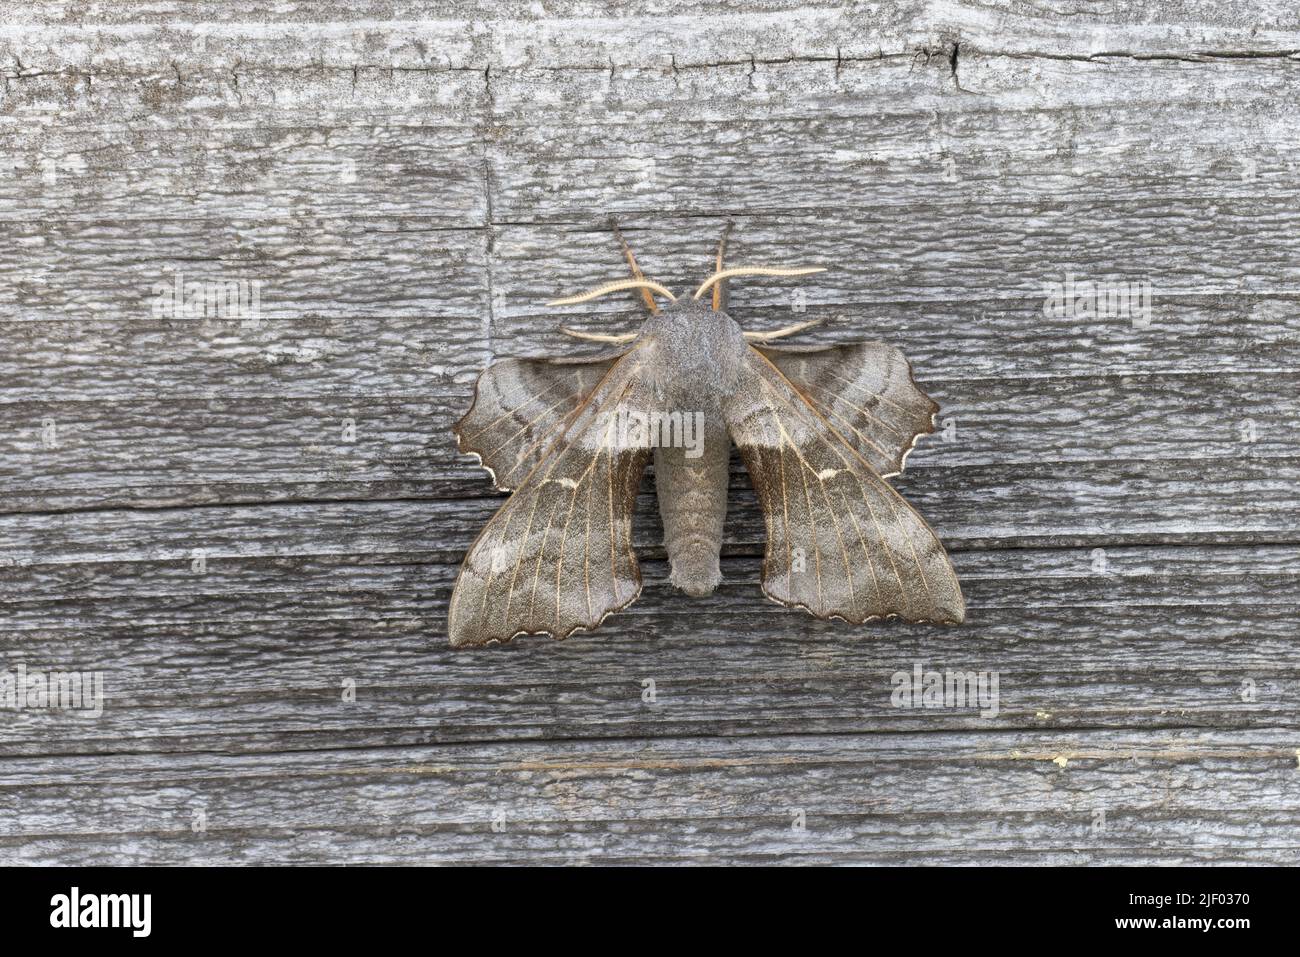 Poplar Hawk Moths – Getting 'Fresh'! – The Orkney News